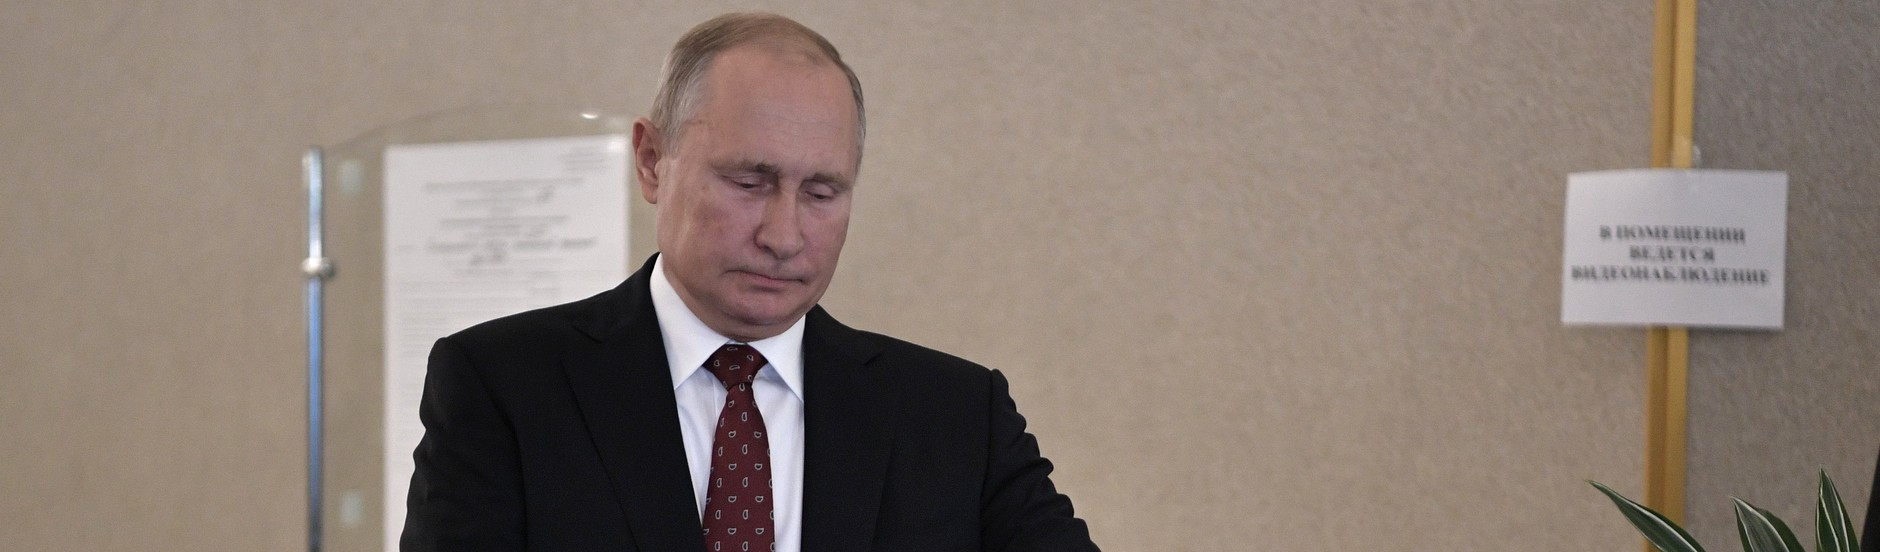 Oposição amplia representação nas urnas em Moscou, mas Putin mantém hegemonia